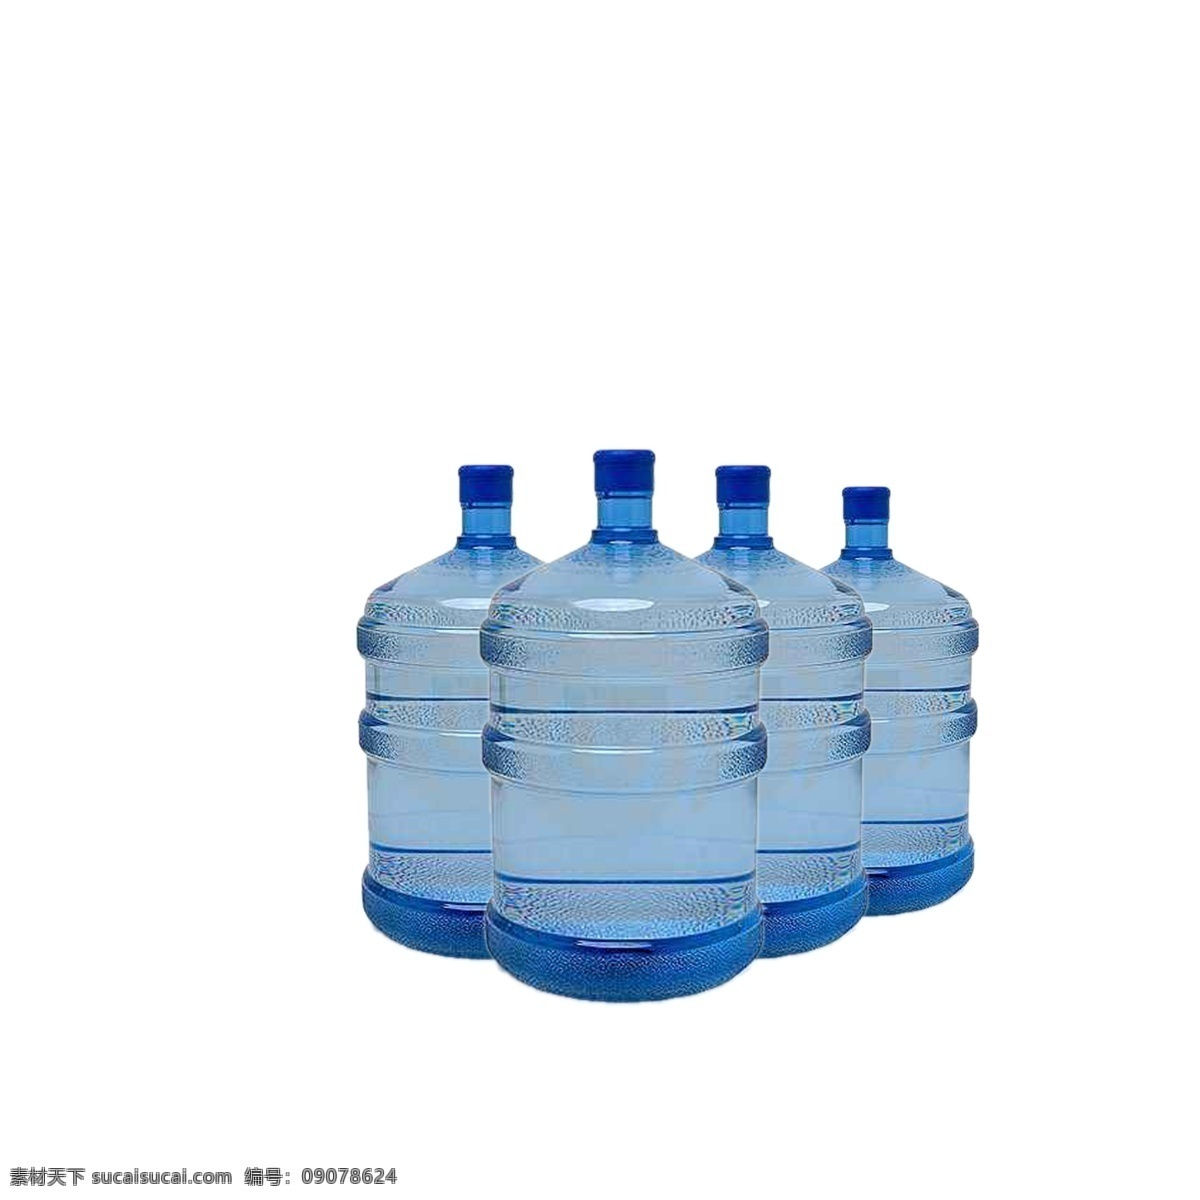 桶装水图片 水 喝水 桶装水 桶装 就是水